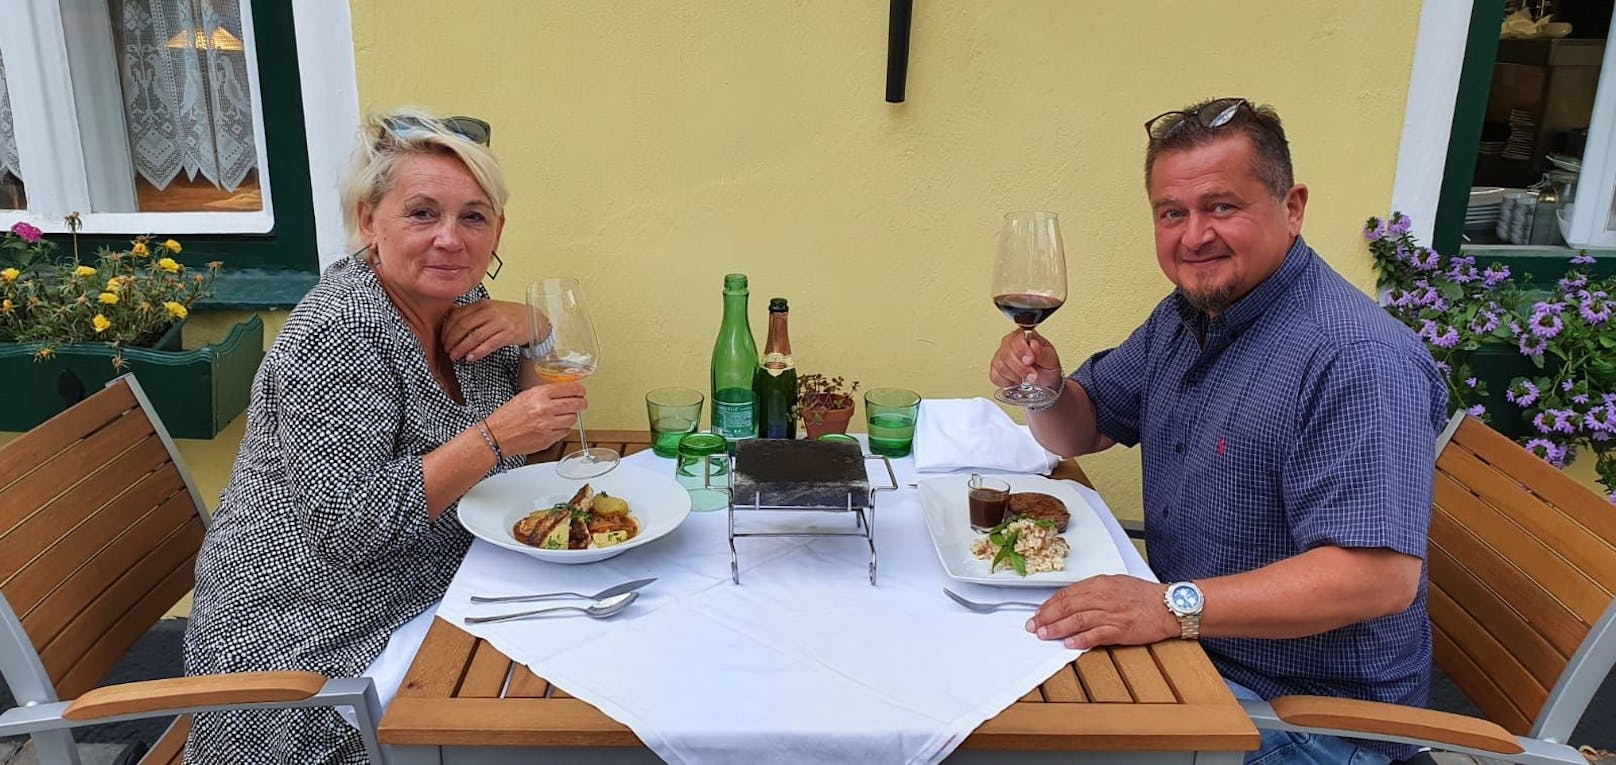 In der Gaststätte Figl genossen Sylvia und Josef hochwertige regionale und saisonale Produkte auf ihren Tellern.